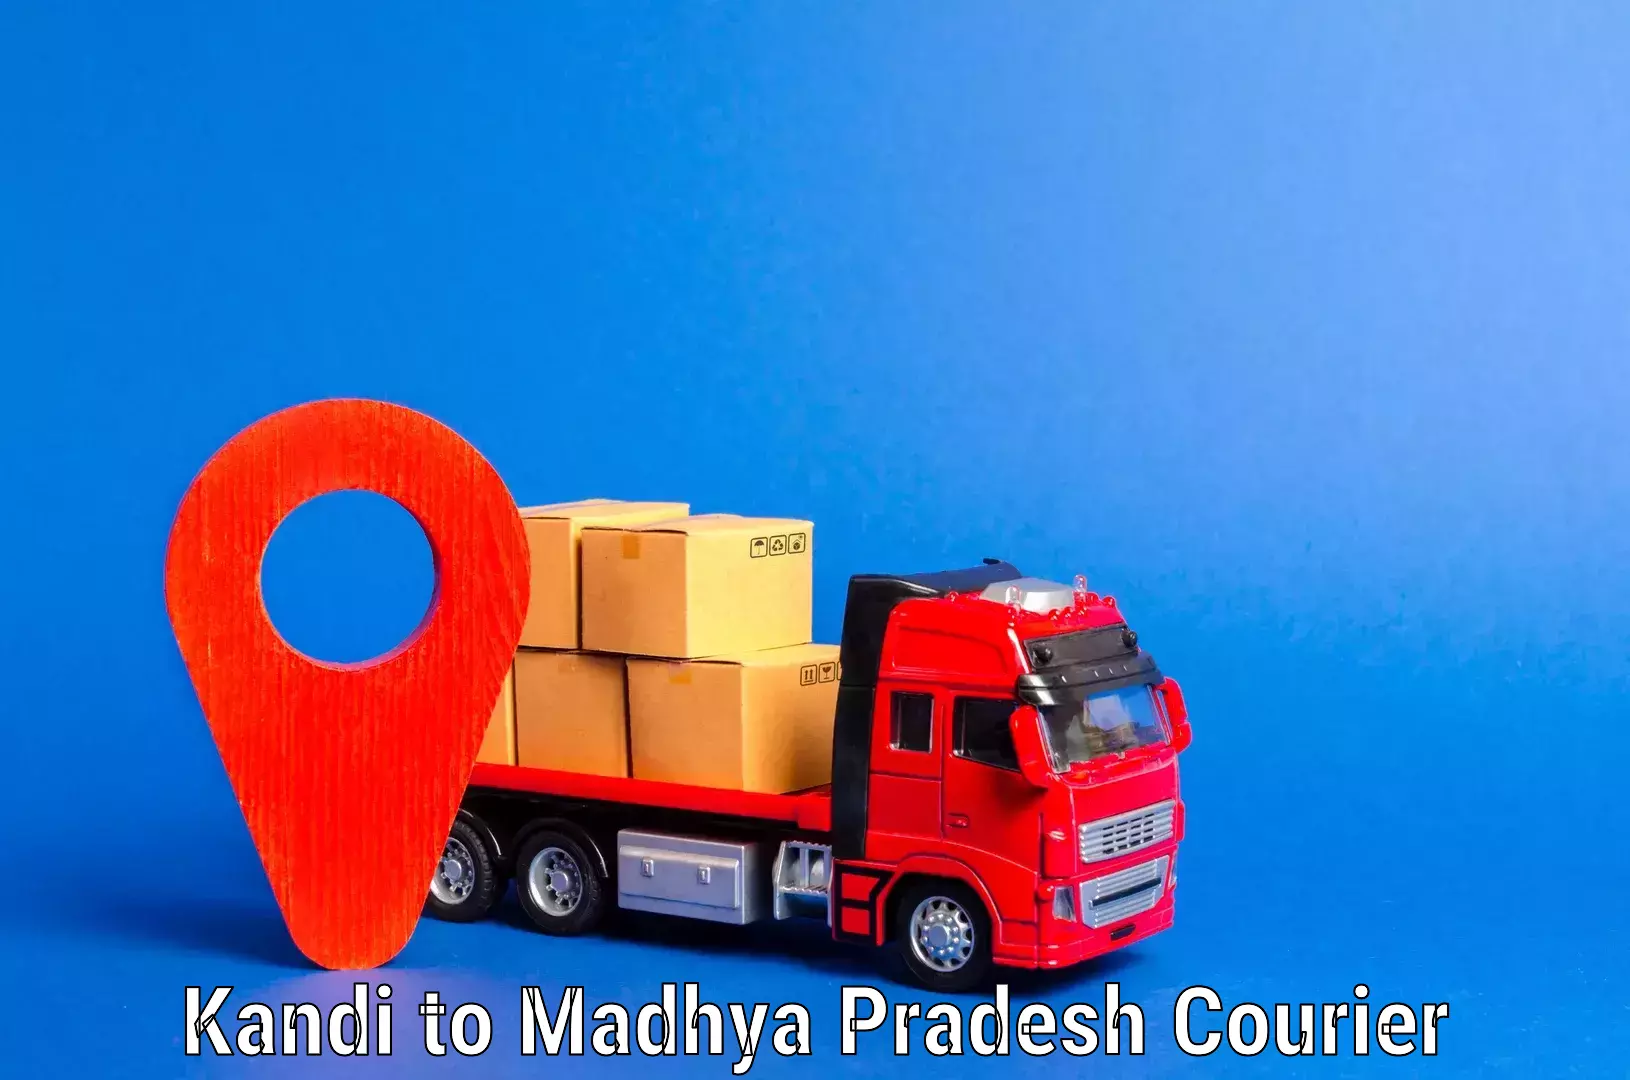 Professional movers and packers Kandi to Madhya Pradesh